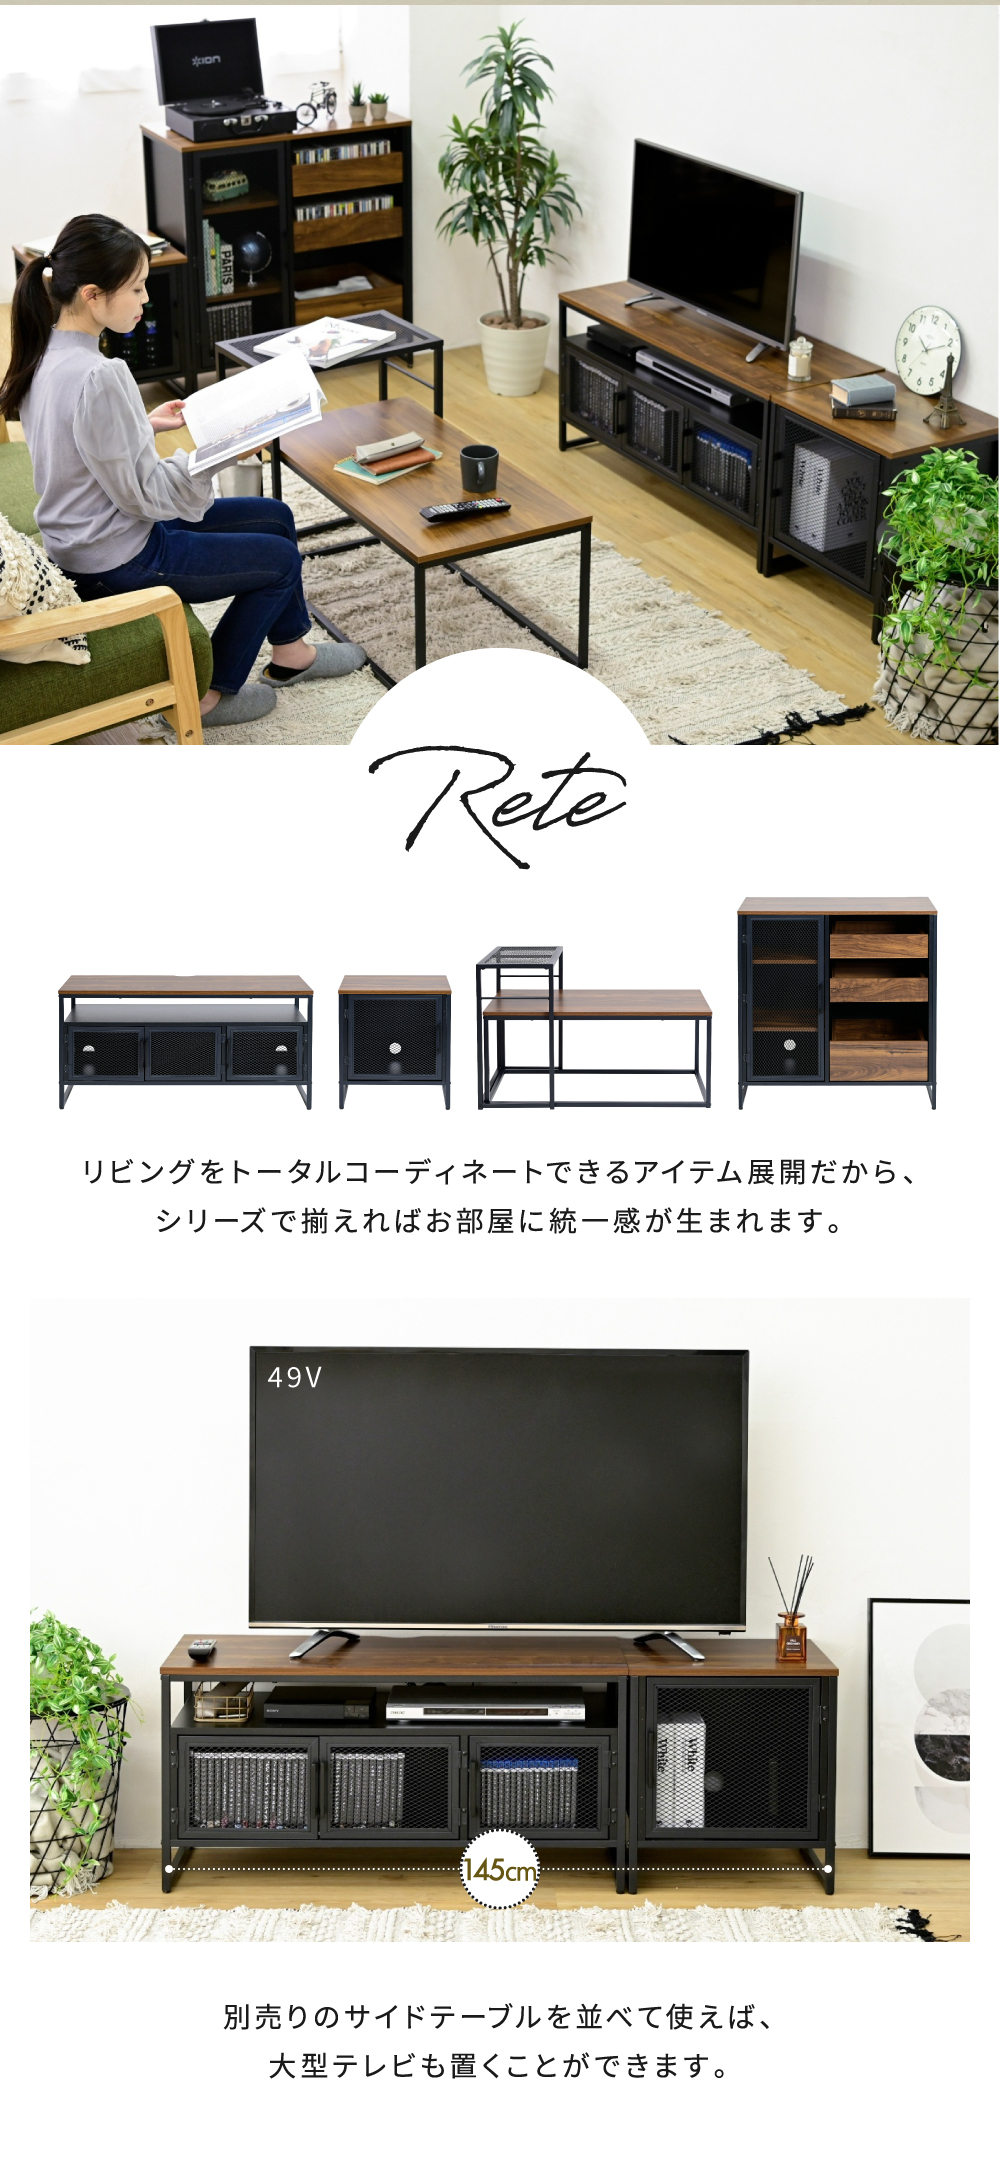 ヴインテージメッシュシリーズ Rete テレビ台 TRT-0001 商品画像8